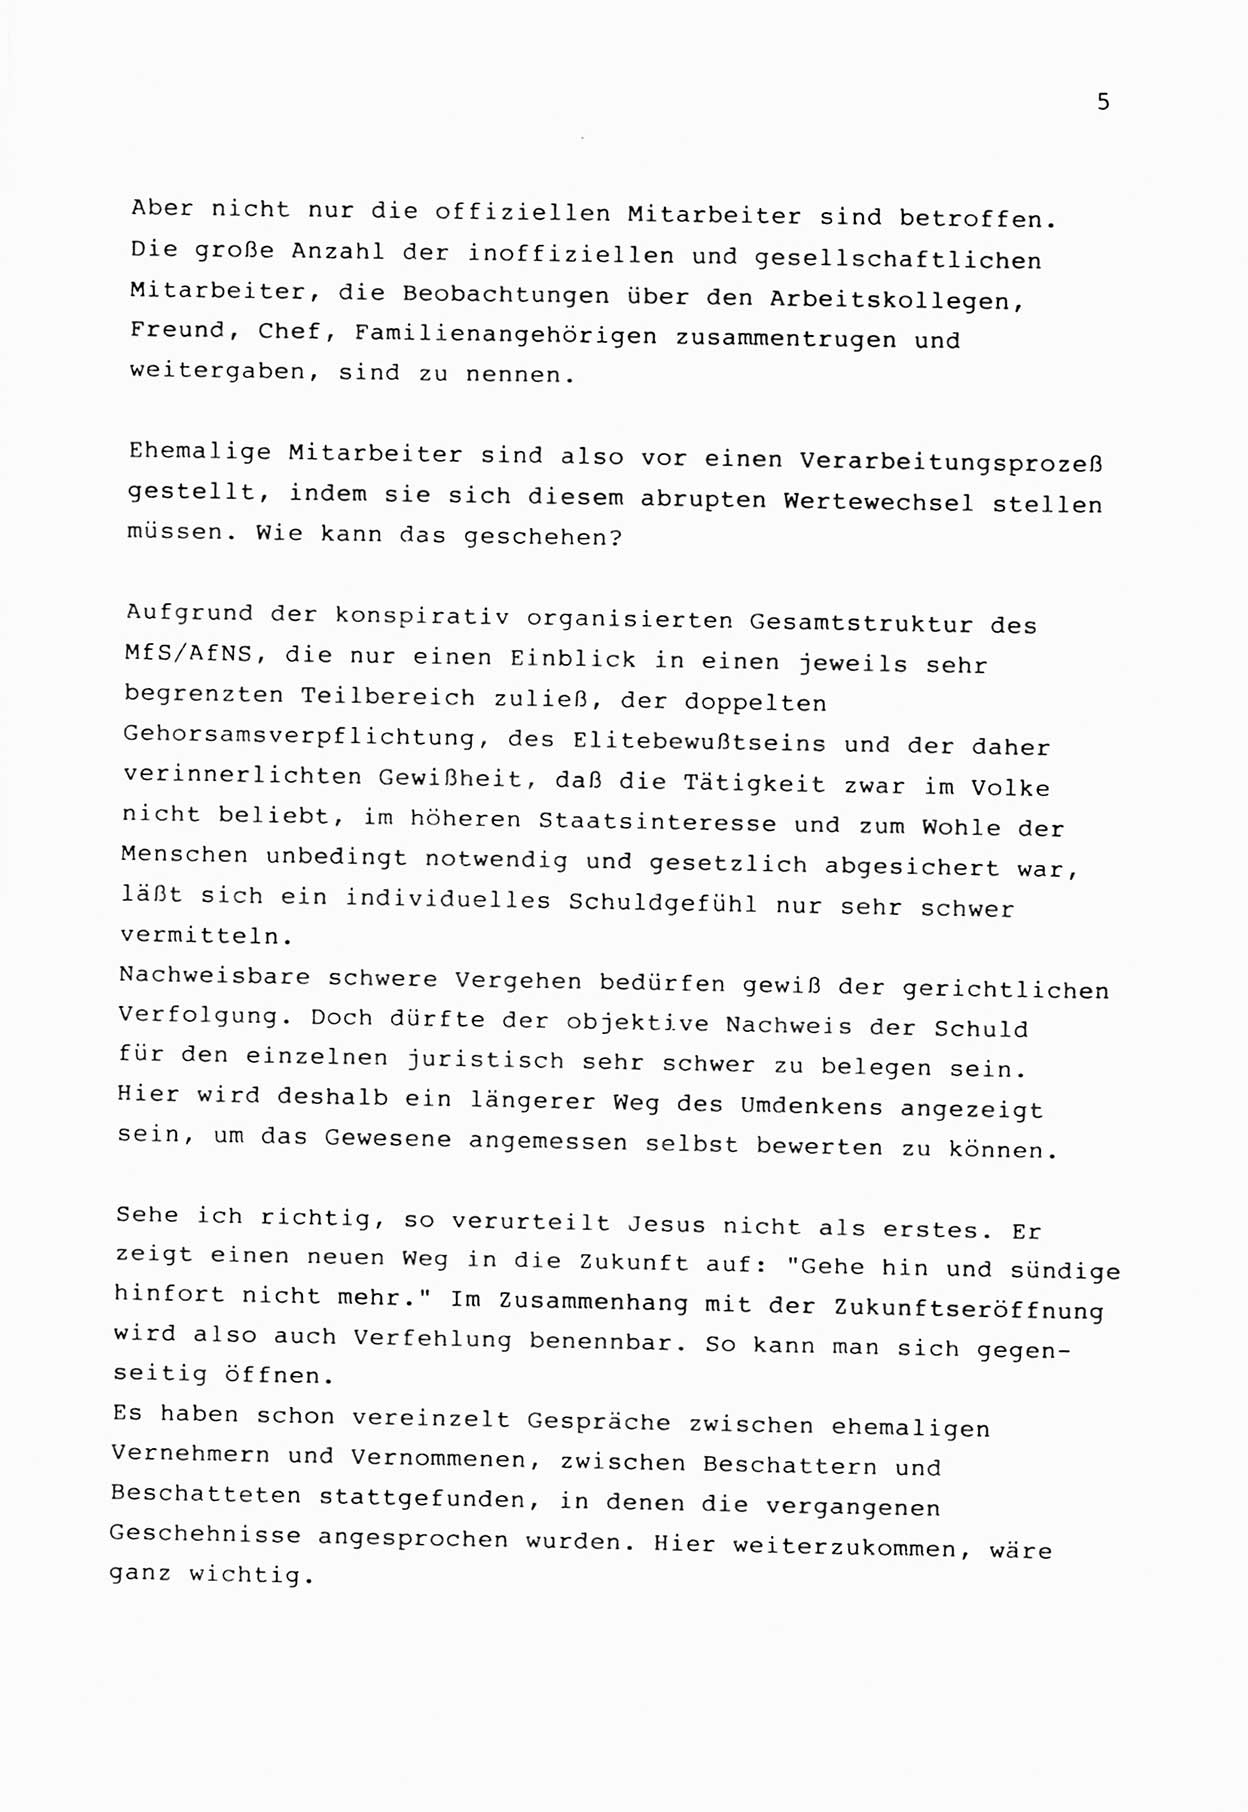 Zwie-Gespräch, Beiträge zur Bewältigung der Stasi-Vergangenheit [Deutsche Demokratische Republik (DDR)], Ausgabe Nr. 1, Berlin 1991, Seite 5 (Zwie-Gespr. Ausg. 1 1991, S. 5)